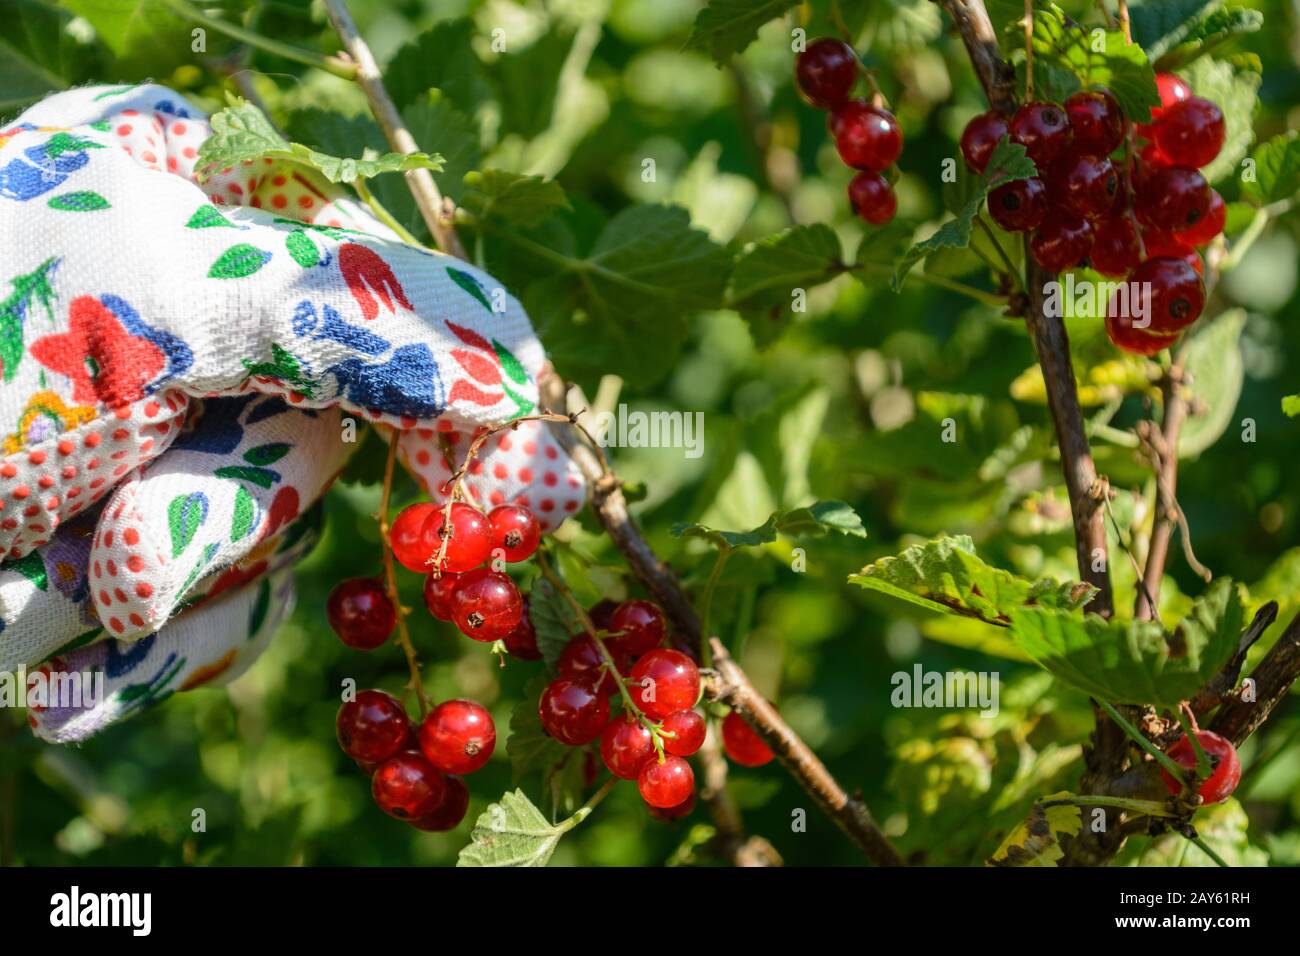 Les groseilles rouges sont récoltées avec des gants de jardinage - gros plan Banque D'Images